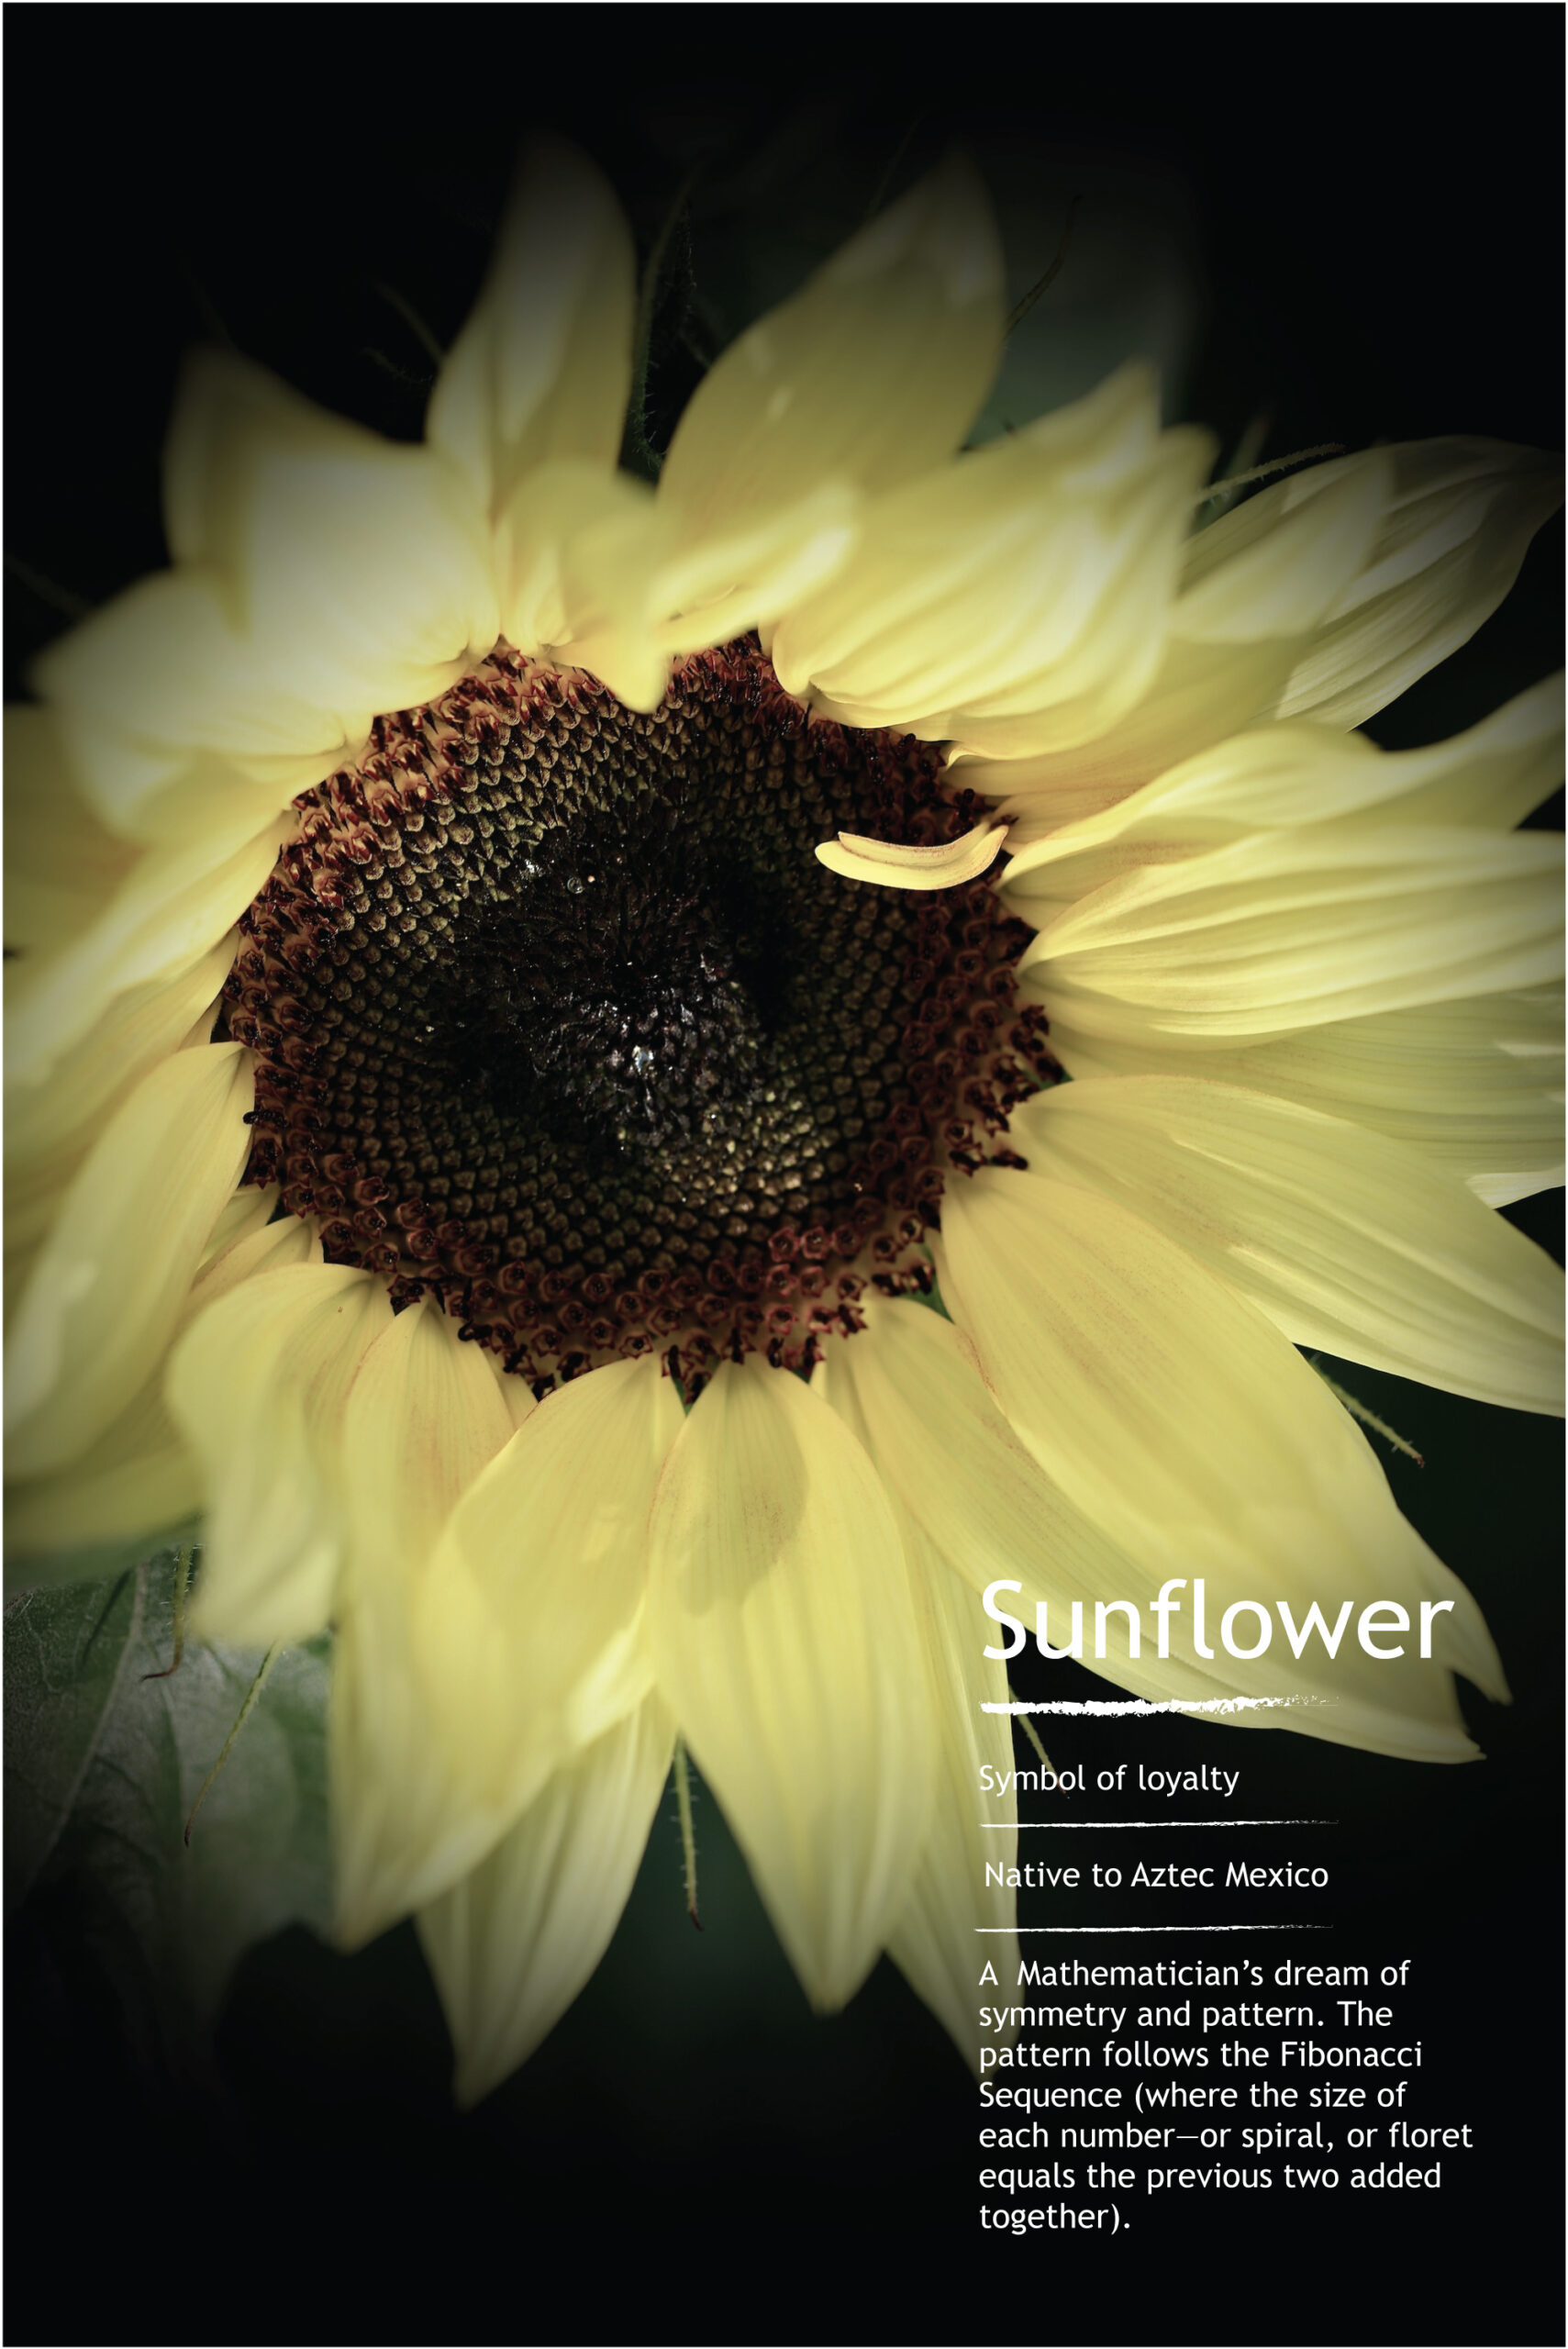 Sunflower information card